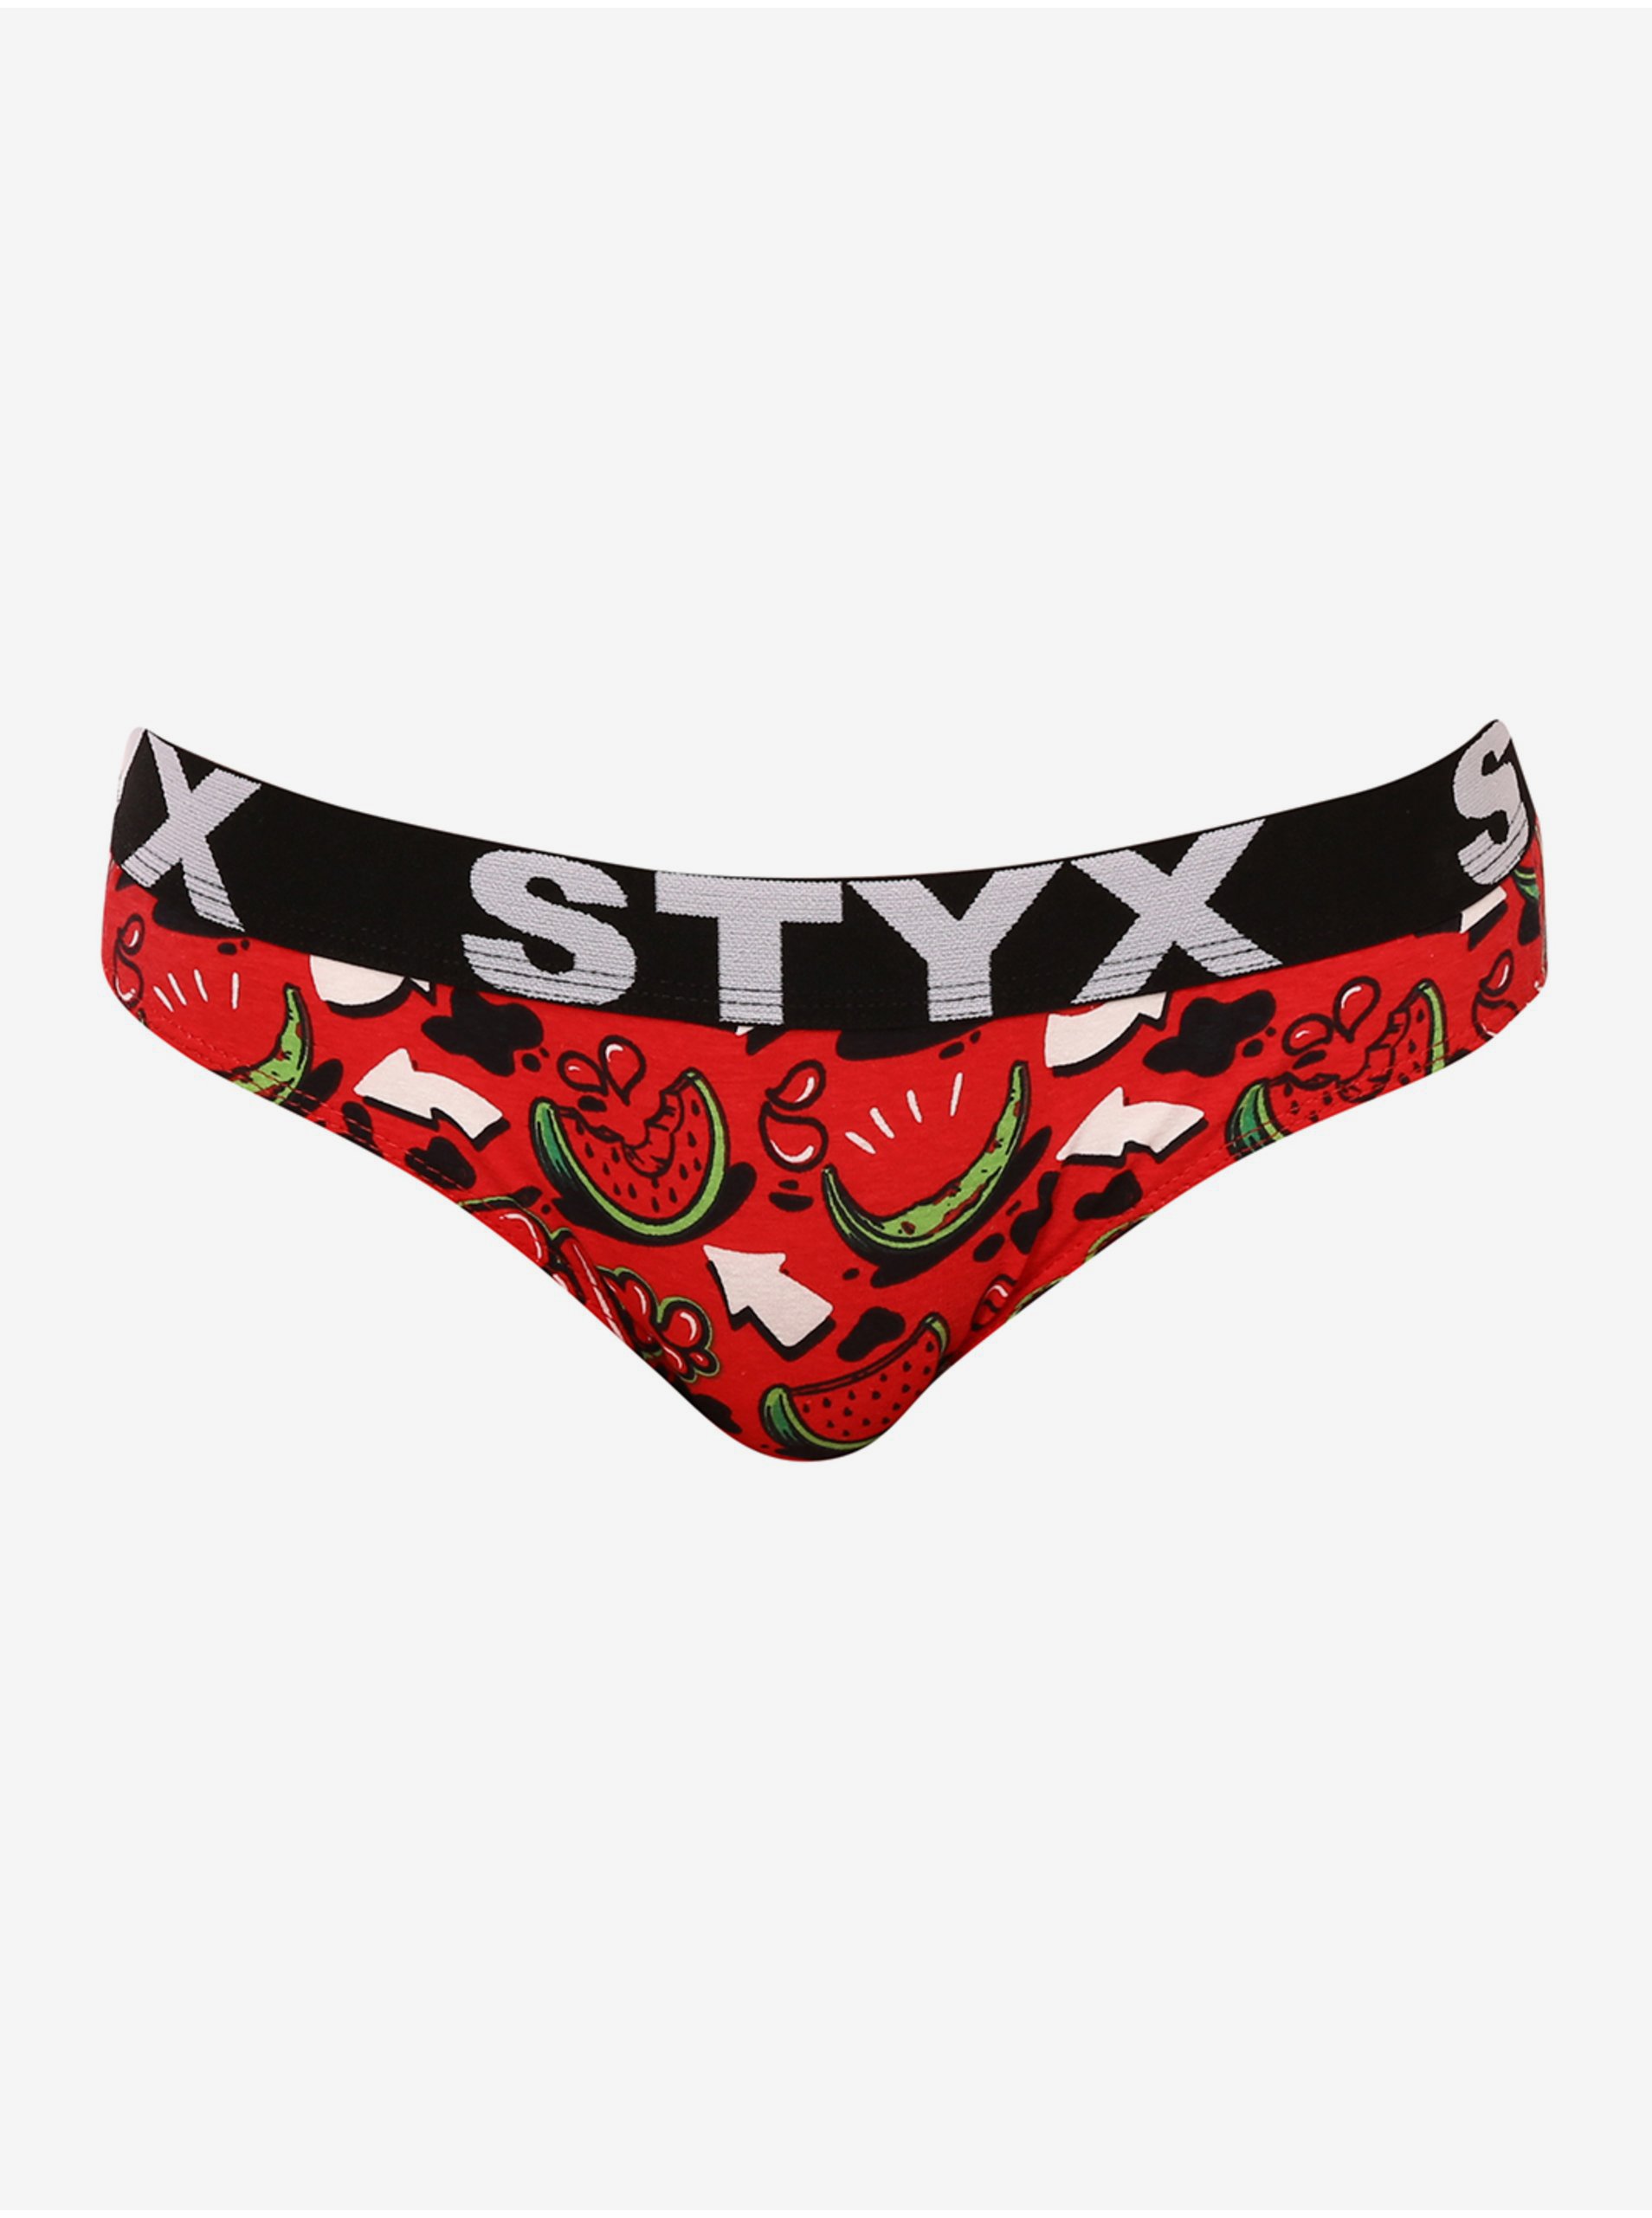 Lacno Nohavičky pre ženy STYX - červená, čierna, zelená